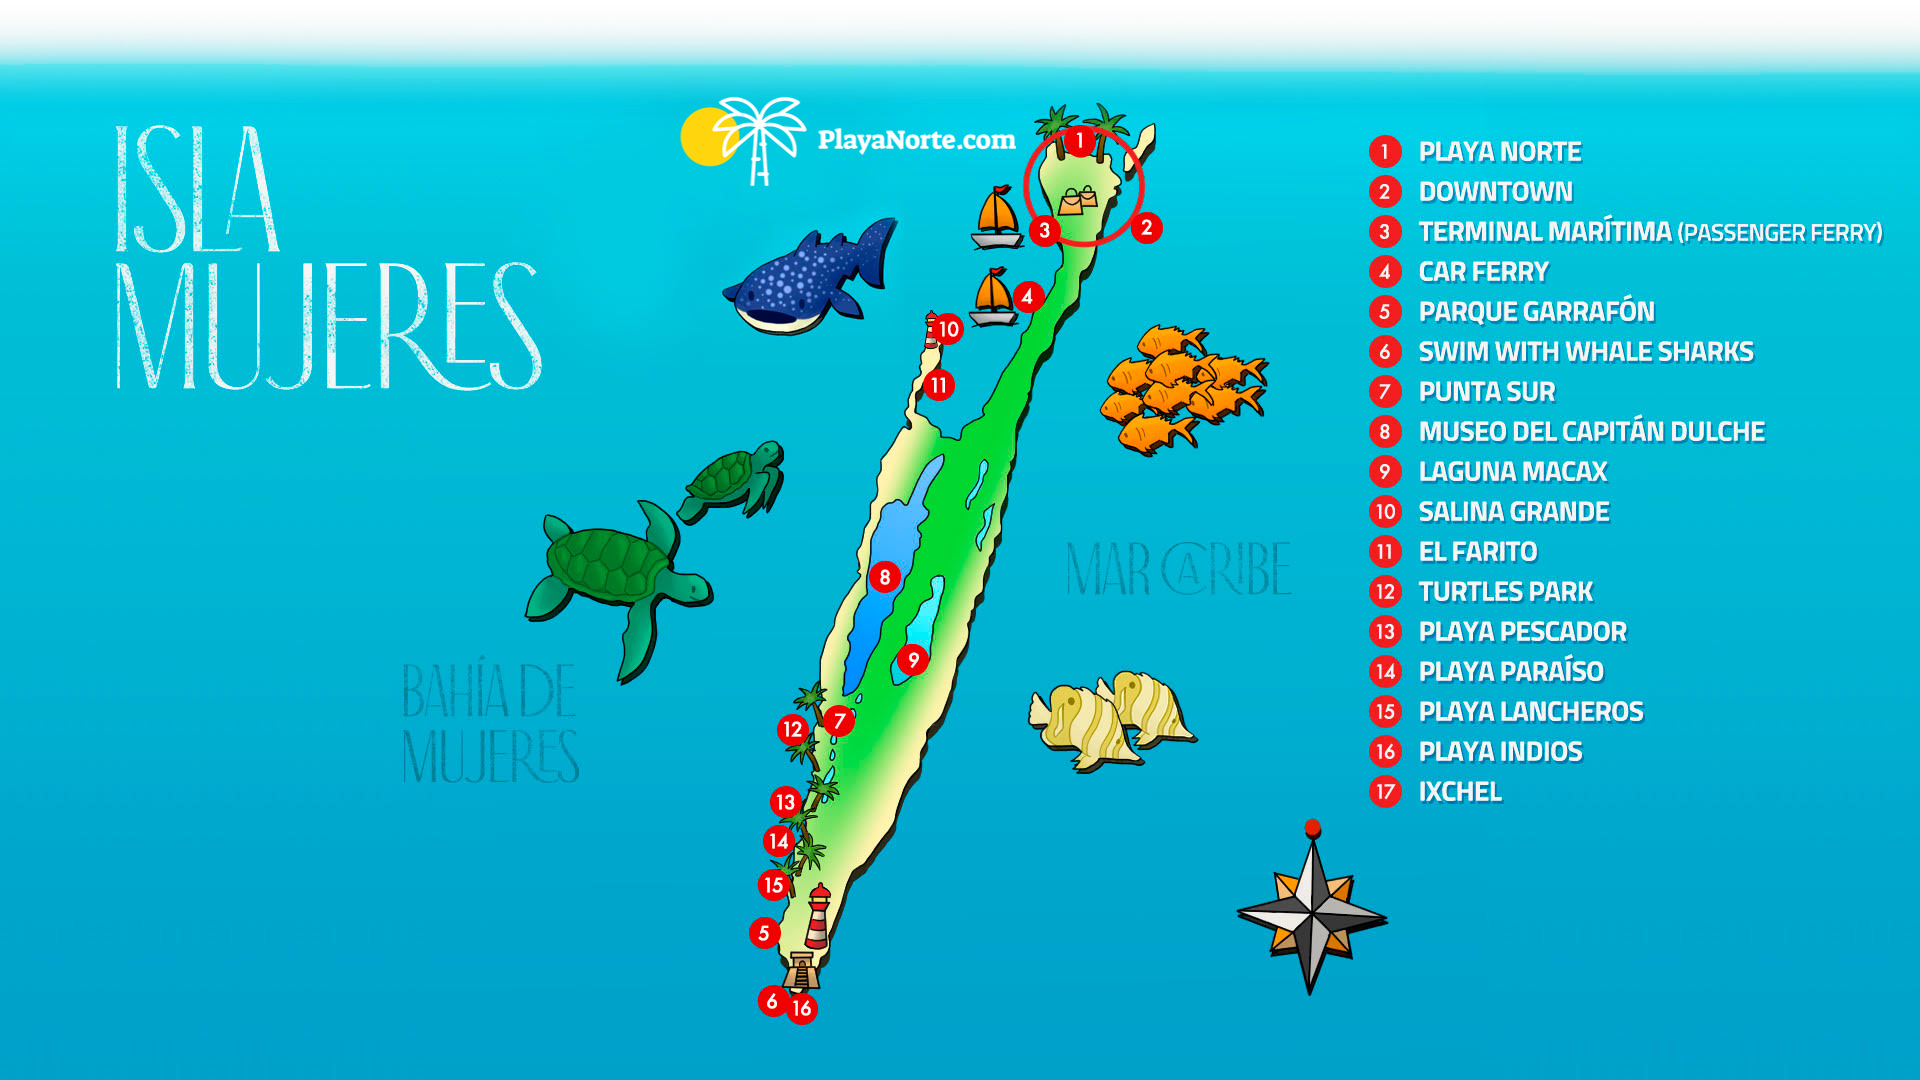 Isla-Mujeres-Map-PlayaNorte_ajustado